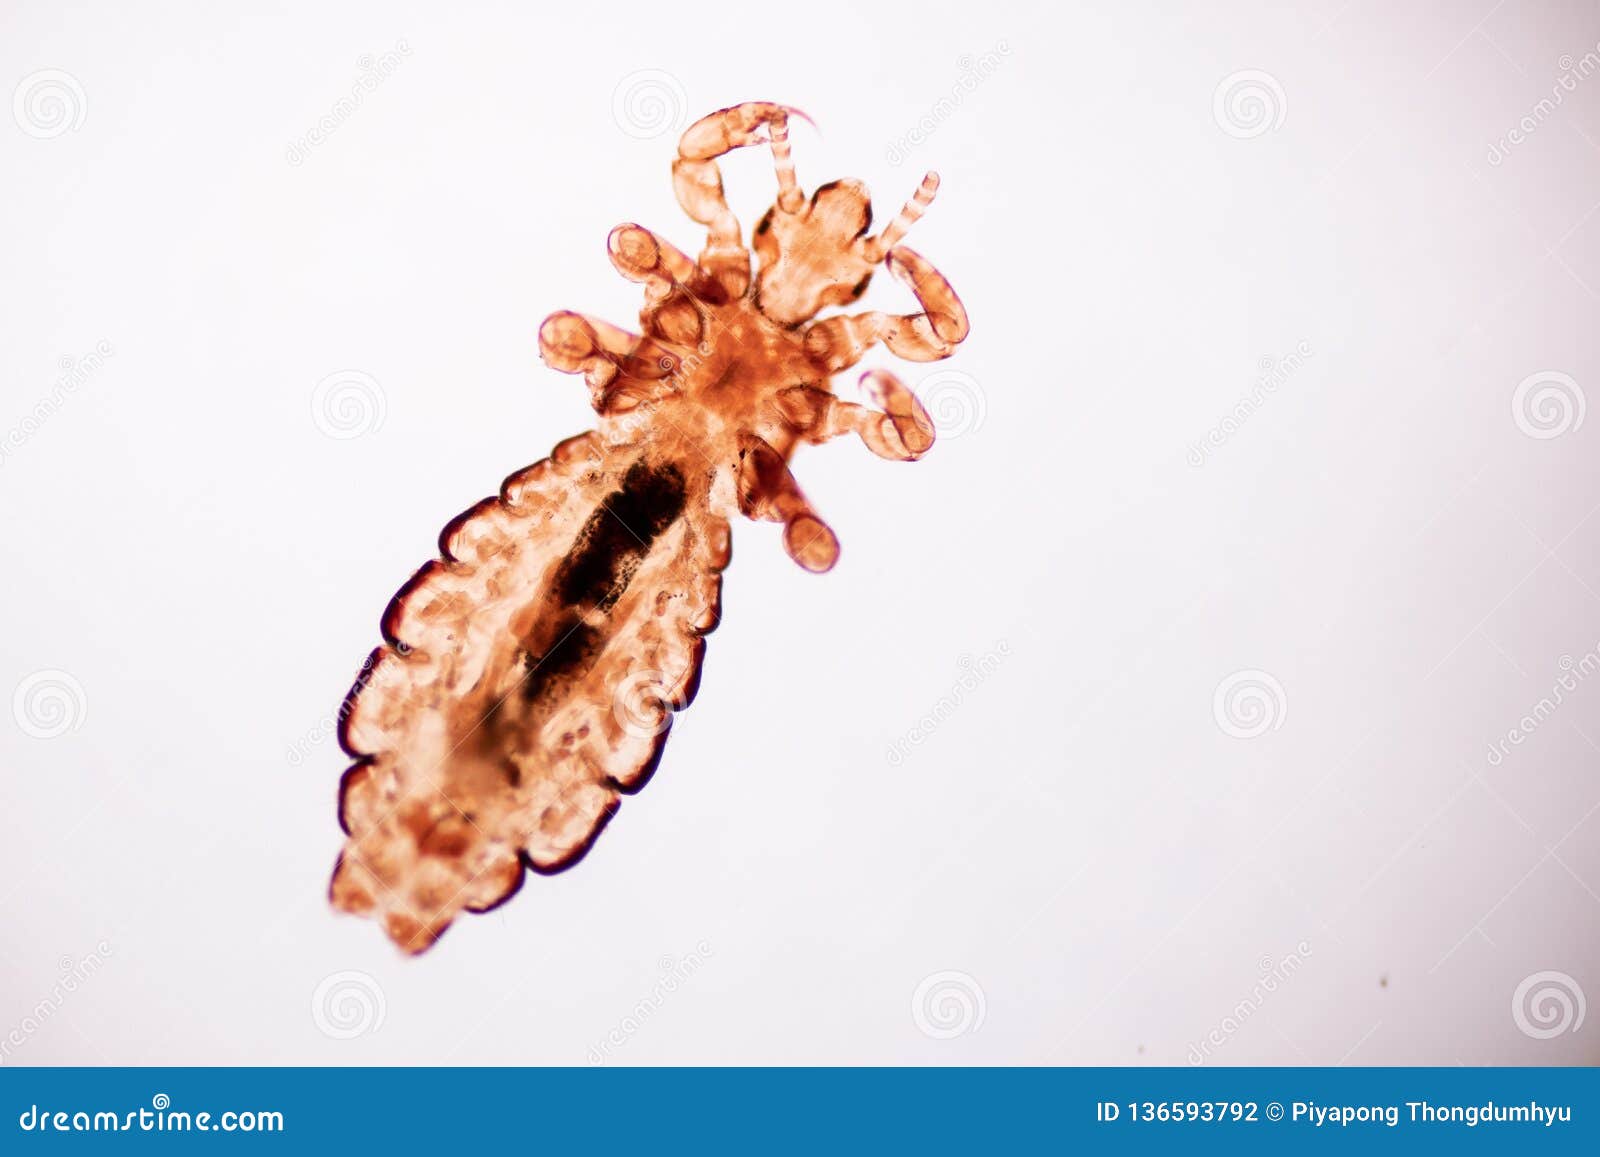 在头发和梳子的虱子 库存图片. 图片 包括有 跳蚤, 健康, 传染, 背包, 昆虫, 寄生生物, 疾病 - 154459311